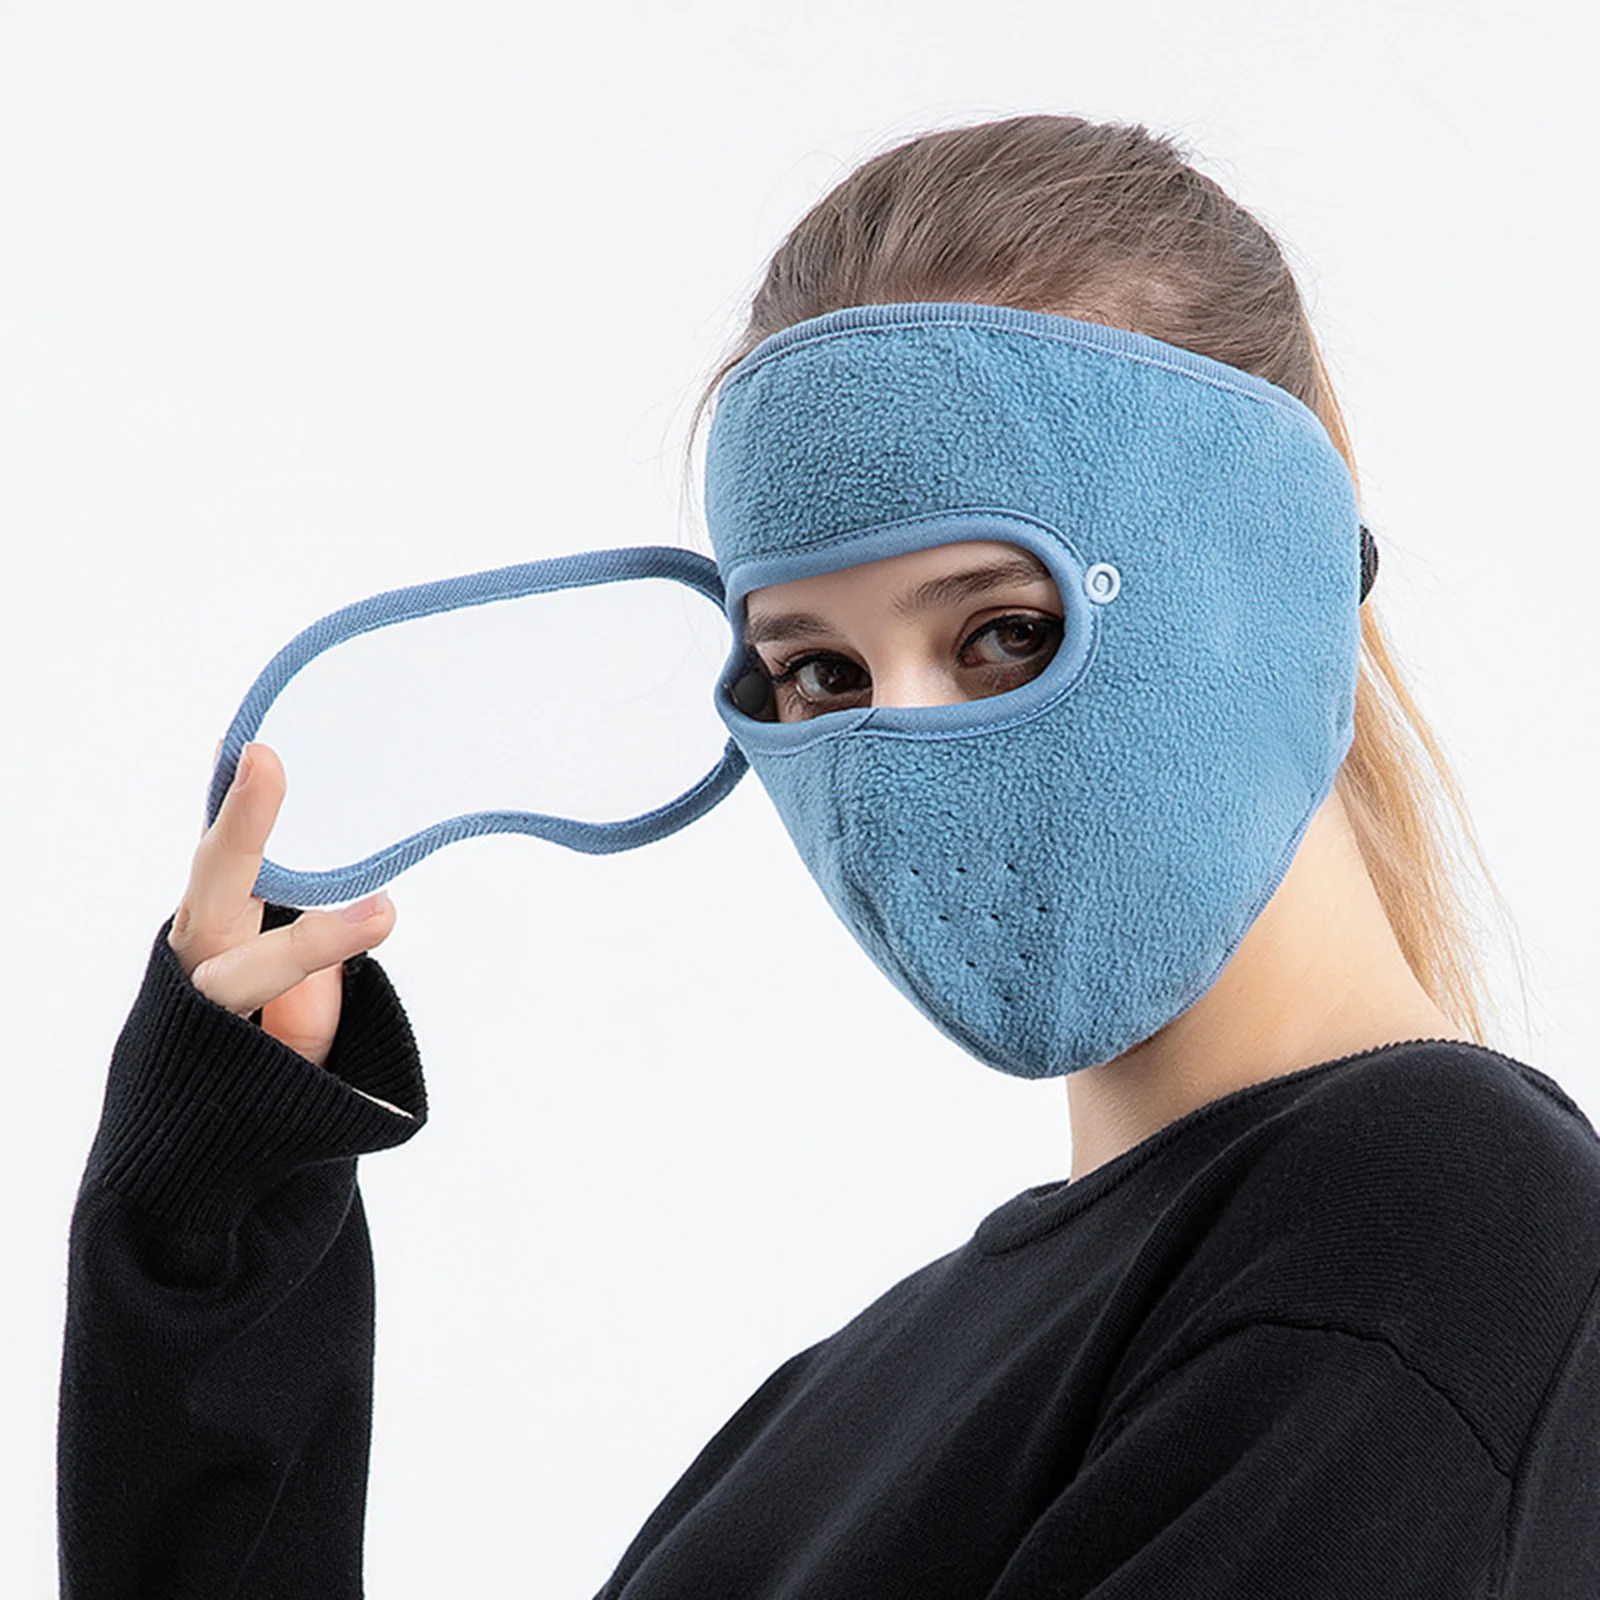 Dust-Proof Full Face Guard Headgear Anti-Fog Winter Warm w/ Goggles Skiing